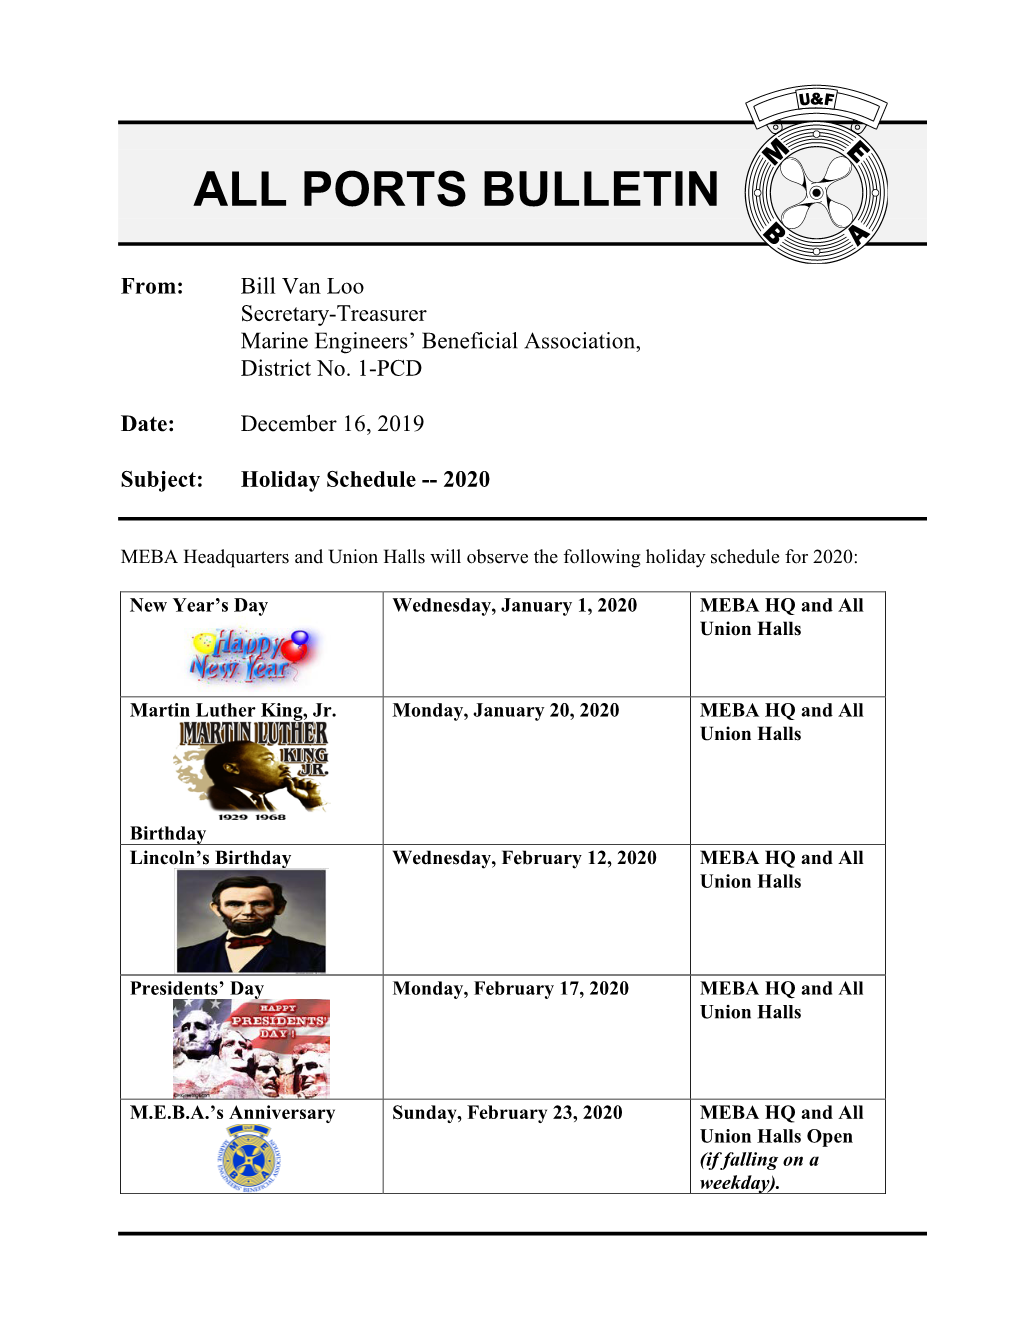 All Ports Bulletin